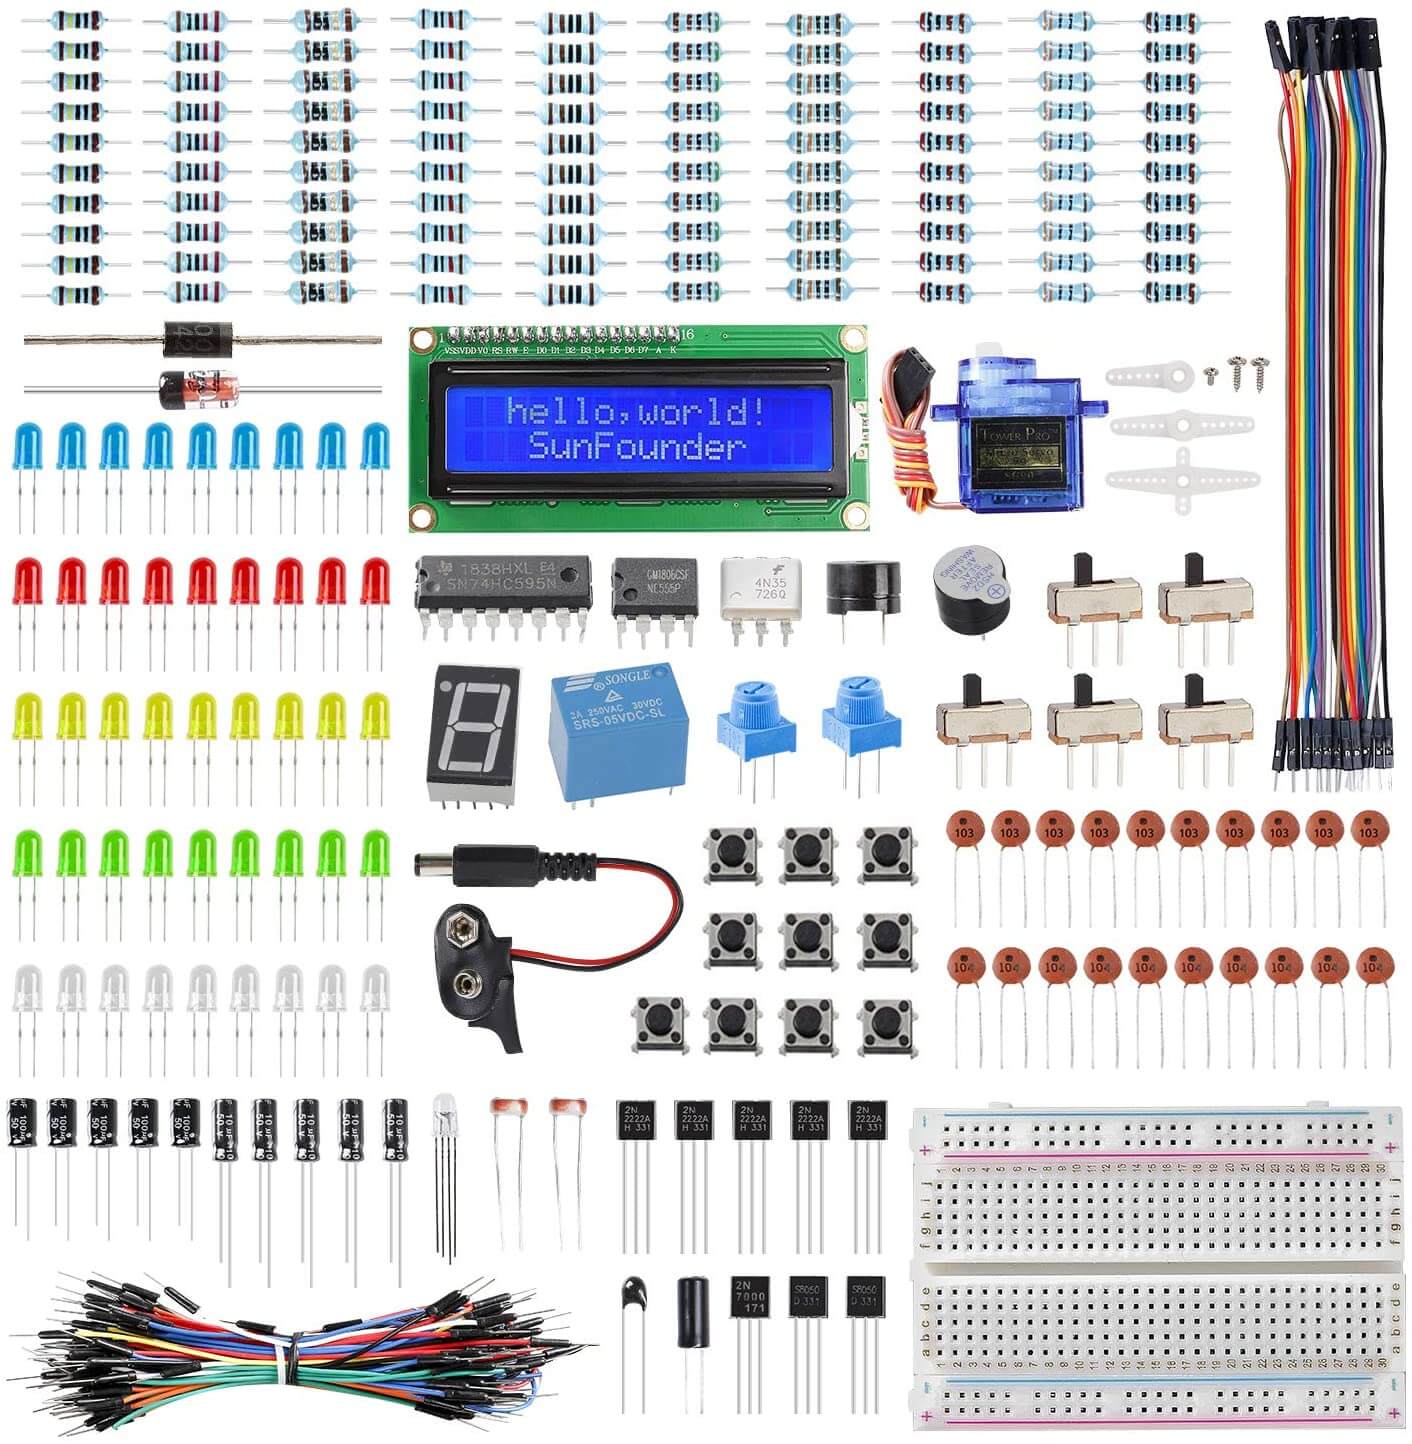 USB Fan Kit Electronics Project Soldering Kit Easy Build Electronics Kit 